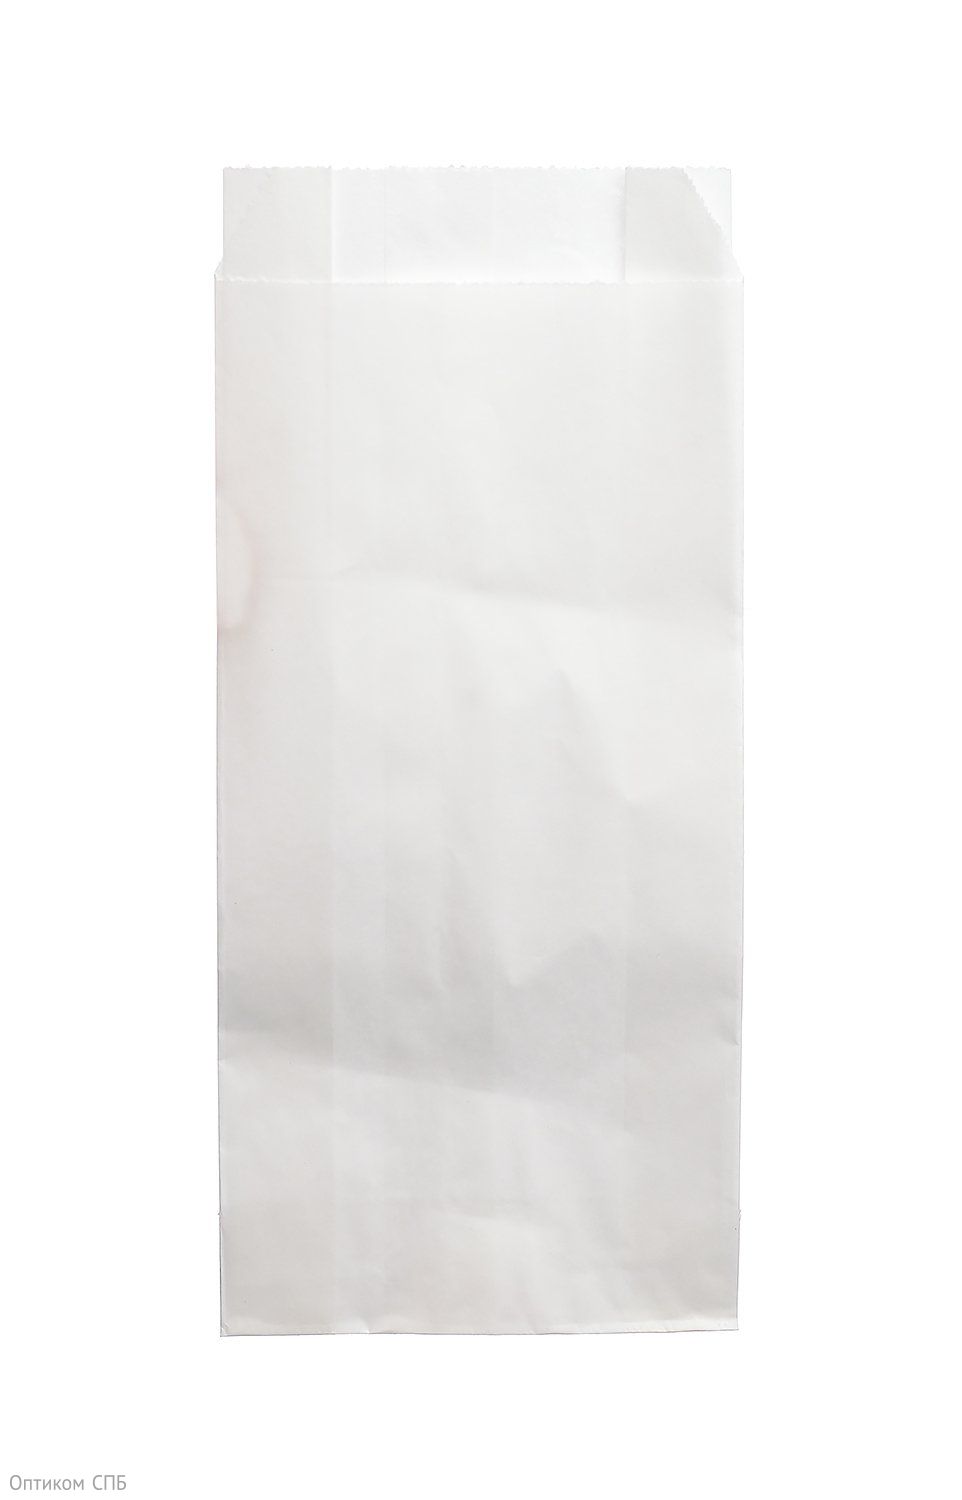 Бумажный пакет с прямоугольным дном подходит для упаковки легких покупок, а также сохранить окружающую среду, благодаря использованию экологически чистых материалов. Размер пакета 90х40х205 мм. Изготовлен из бумаги марки ОДП. Плотность бумаги 40 г/м2. Цвет белый. В упаковке 1600 штук.